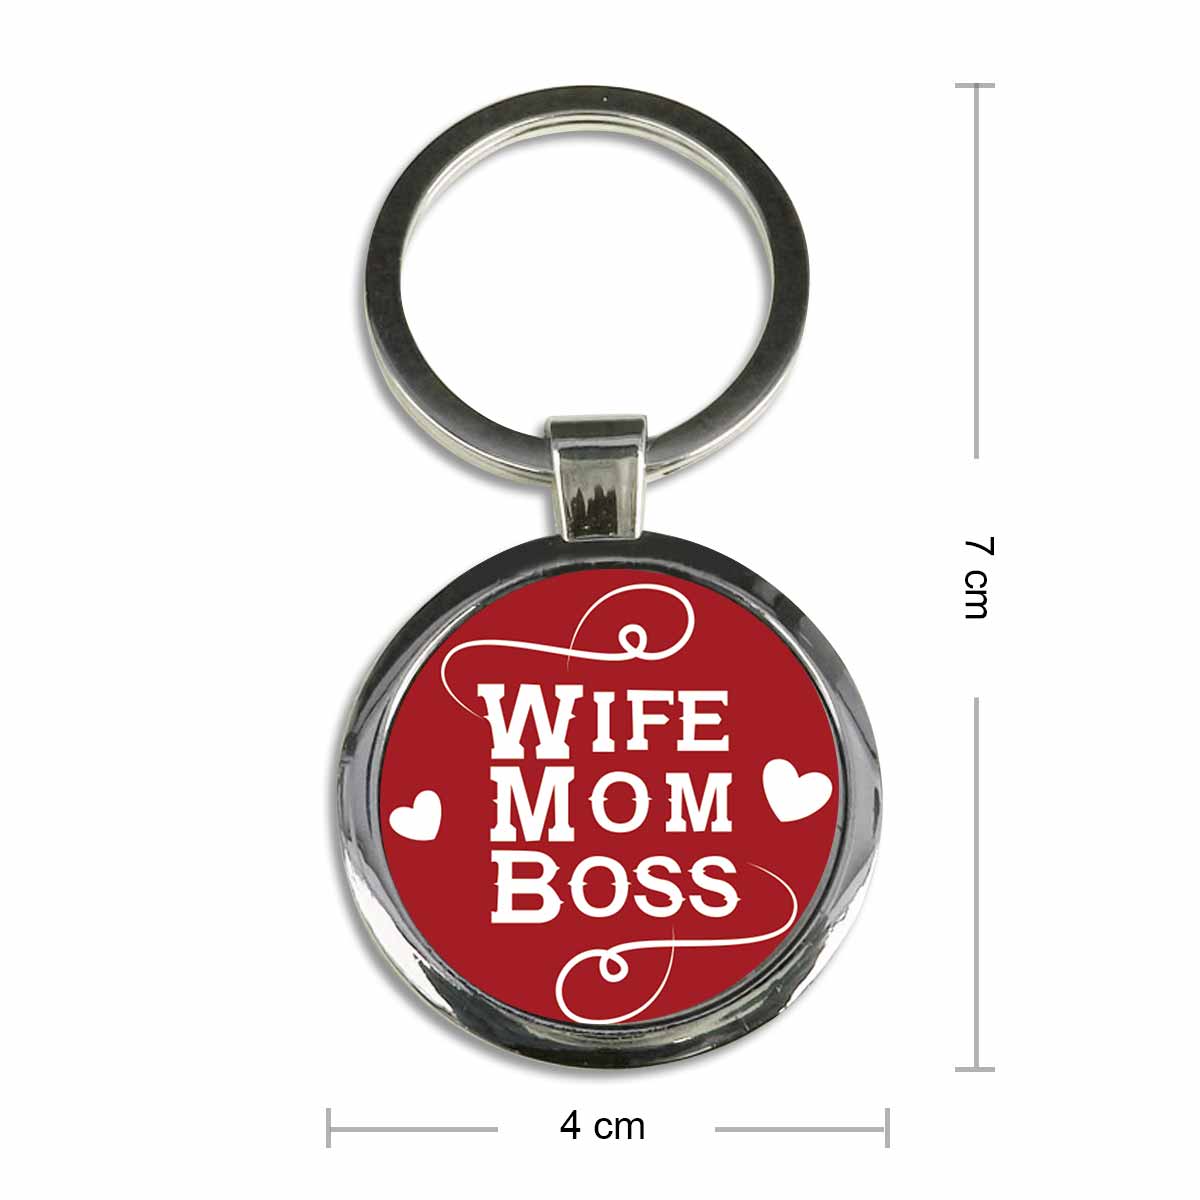 Wife Mom Boss Round Metal Keychain